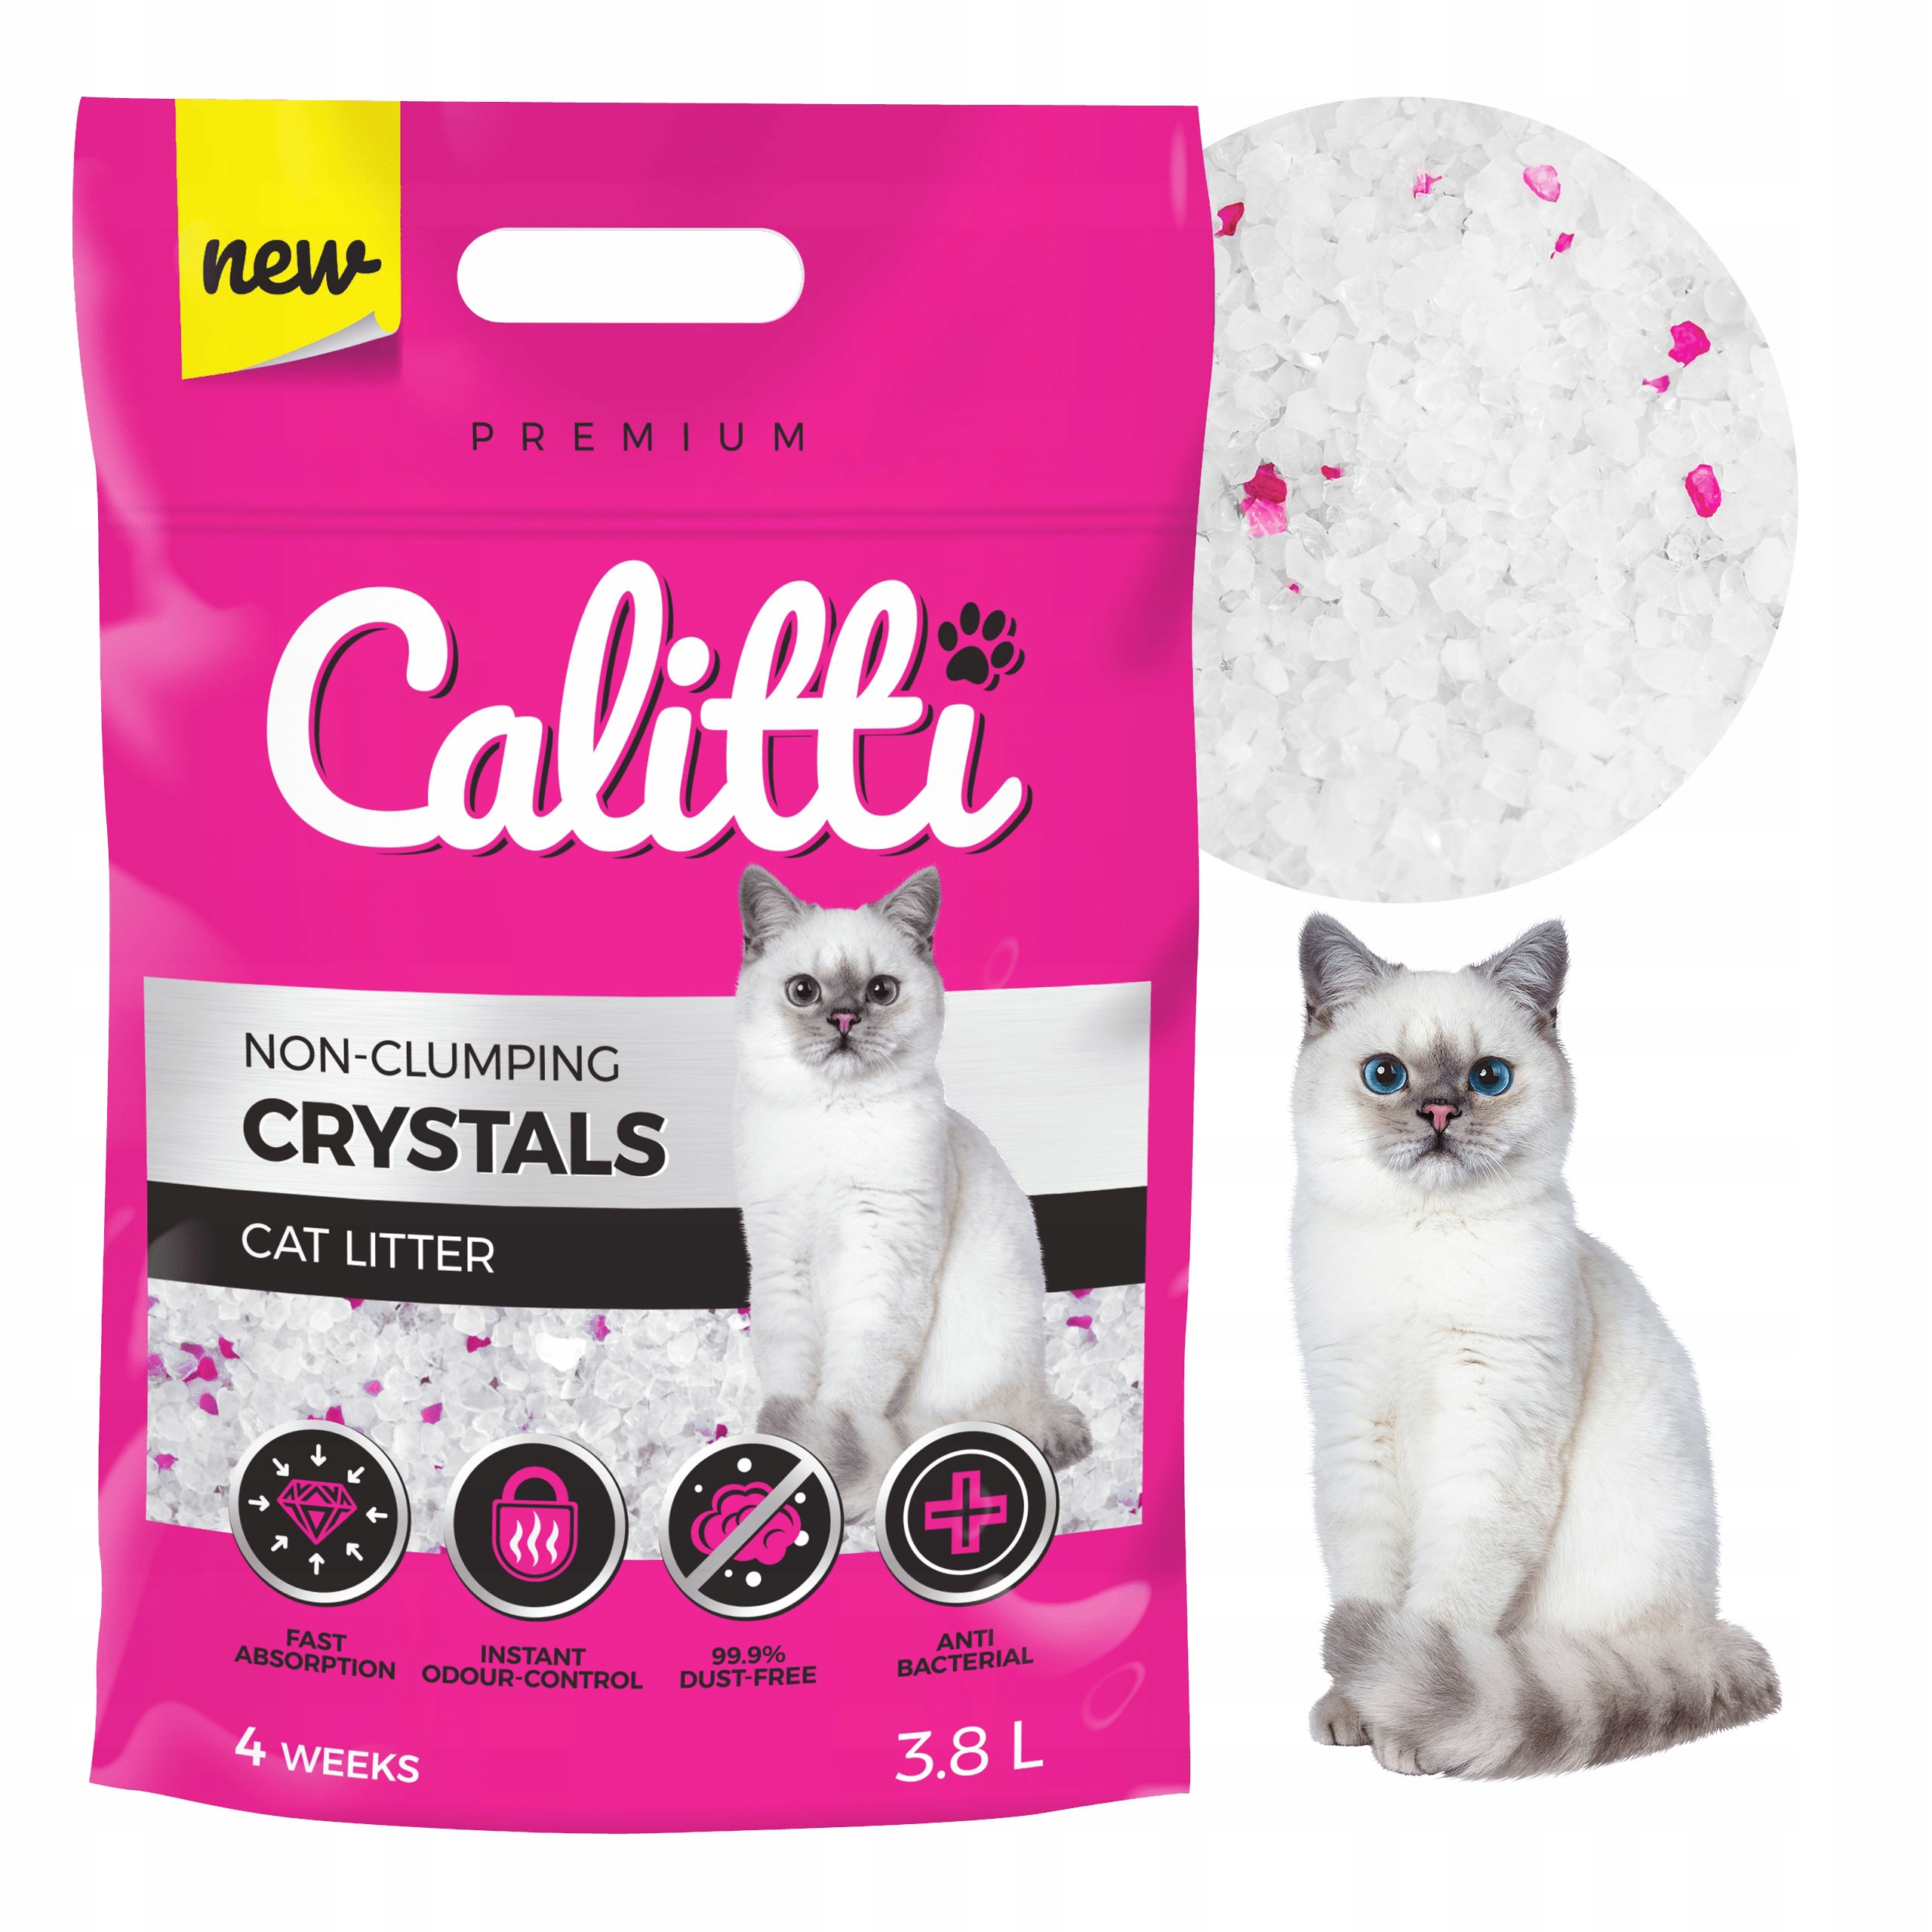 Микро кошки. Силиконовый наполнитель. Crystal Cat Litter. Silicon Cat Litter. Euro Litter наполнитель.